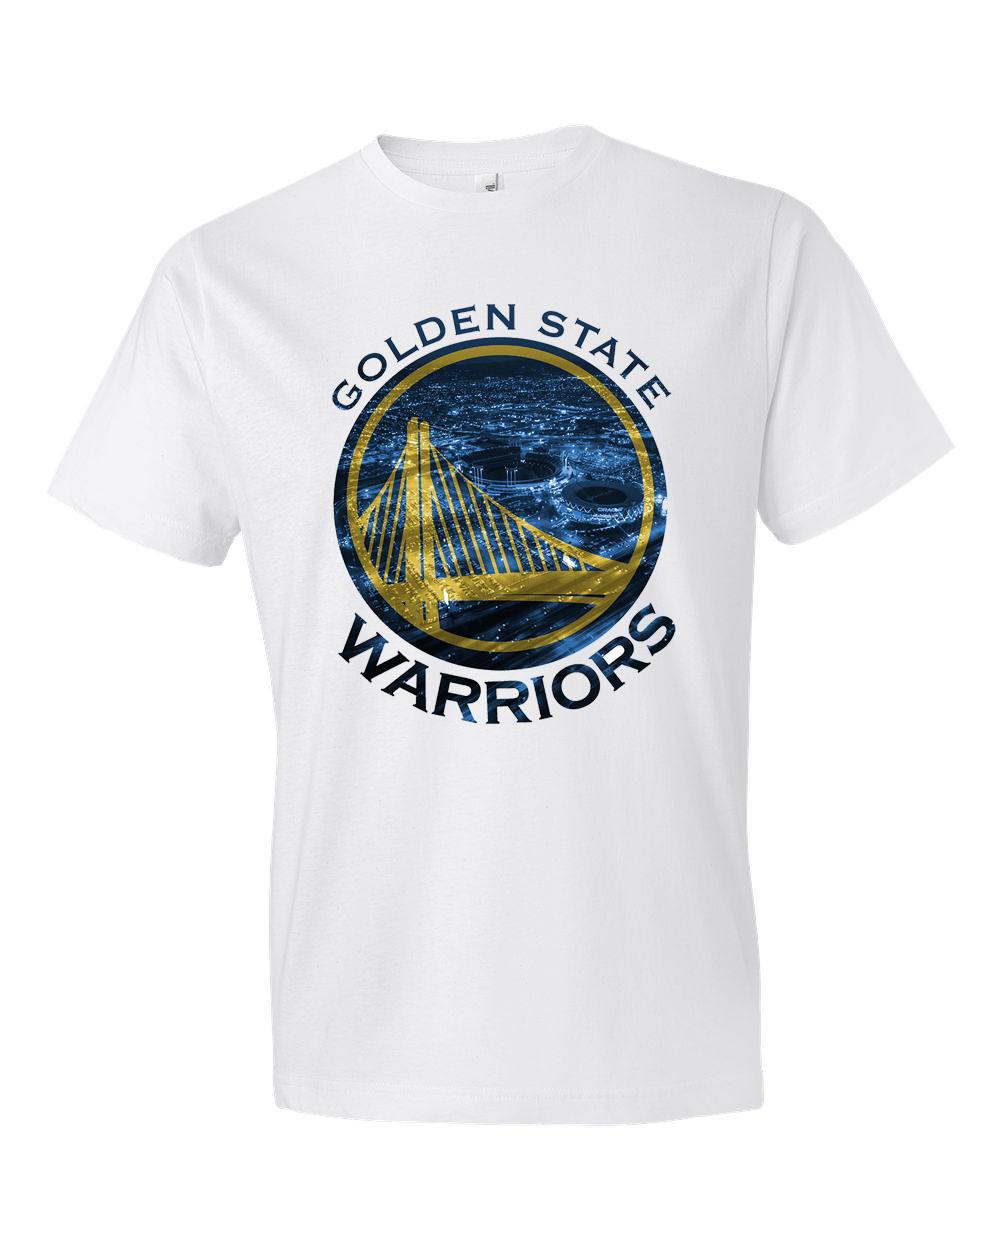 golden state warriors t-shirt design